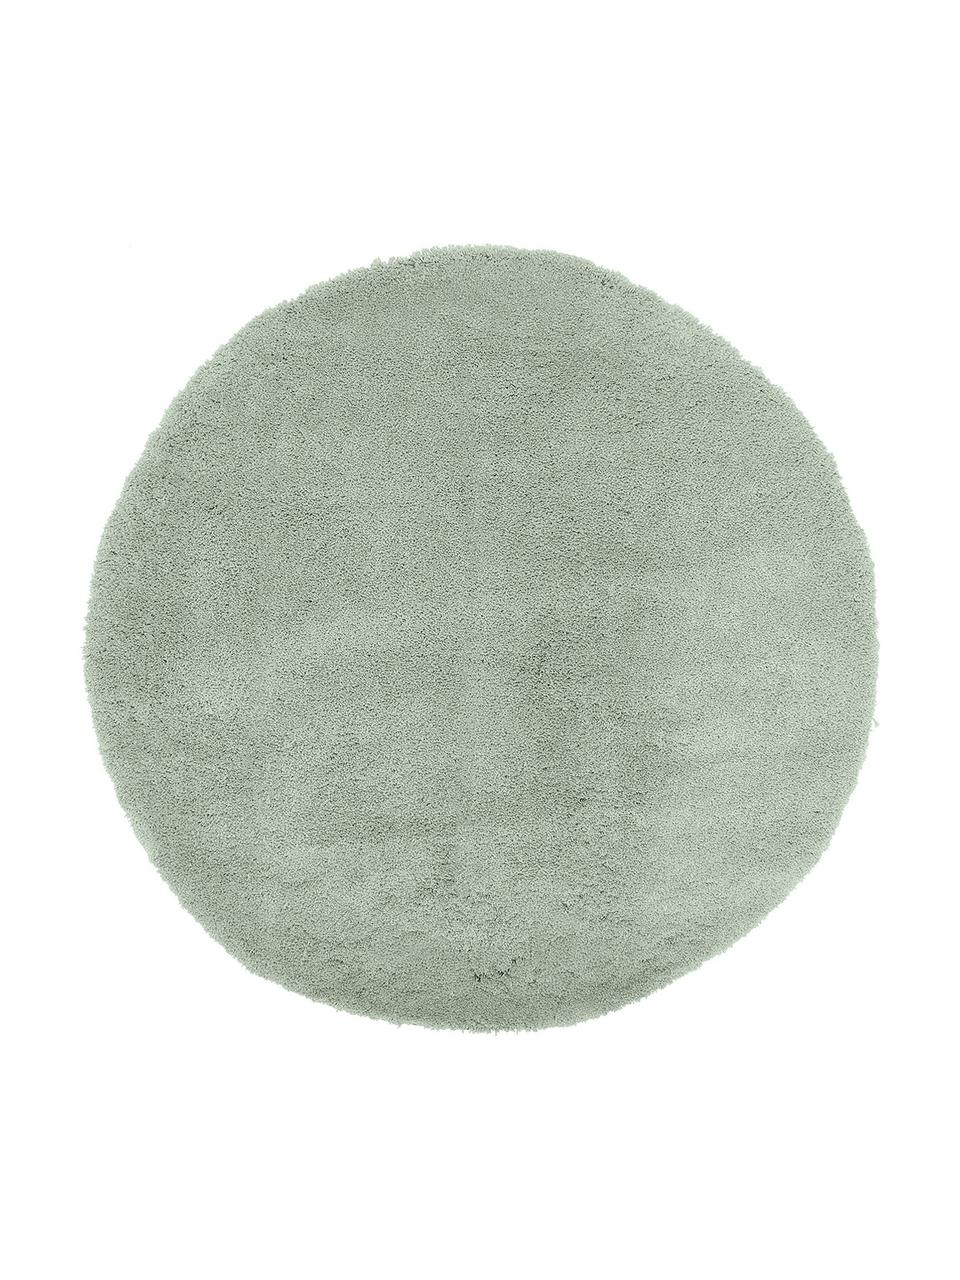 Flauschiger runder Hochflor-Teppich Leighton in Mintgrün, Flor: Mikrofaser (100% Polyeste, Mintgrün, Ø 120 cm (Größe S)